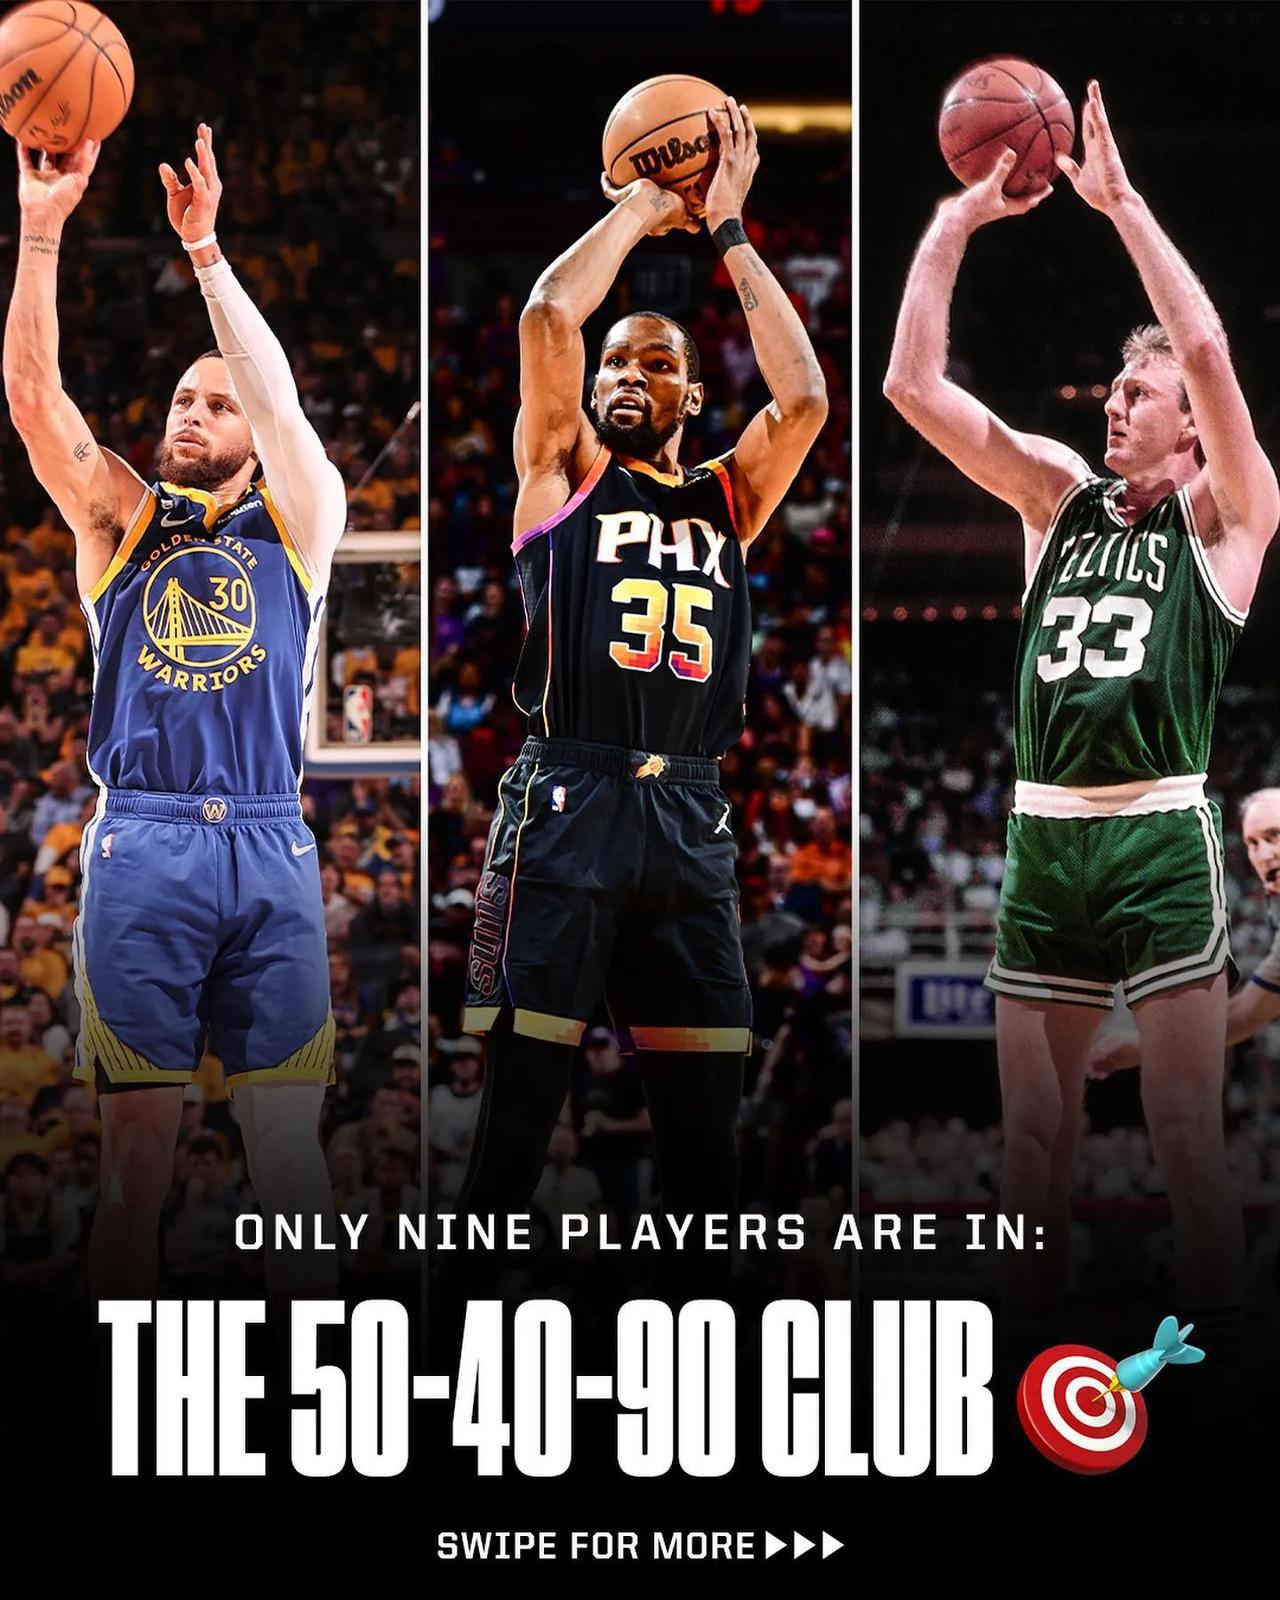 美媒列出了NBA历史上进入过180俱乐部的9名球员
现役斯蒂芬库里、凯里欧文和凯(1)